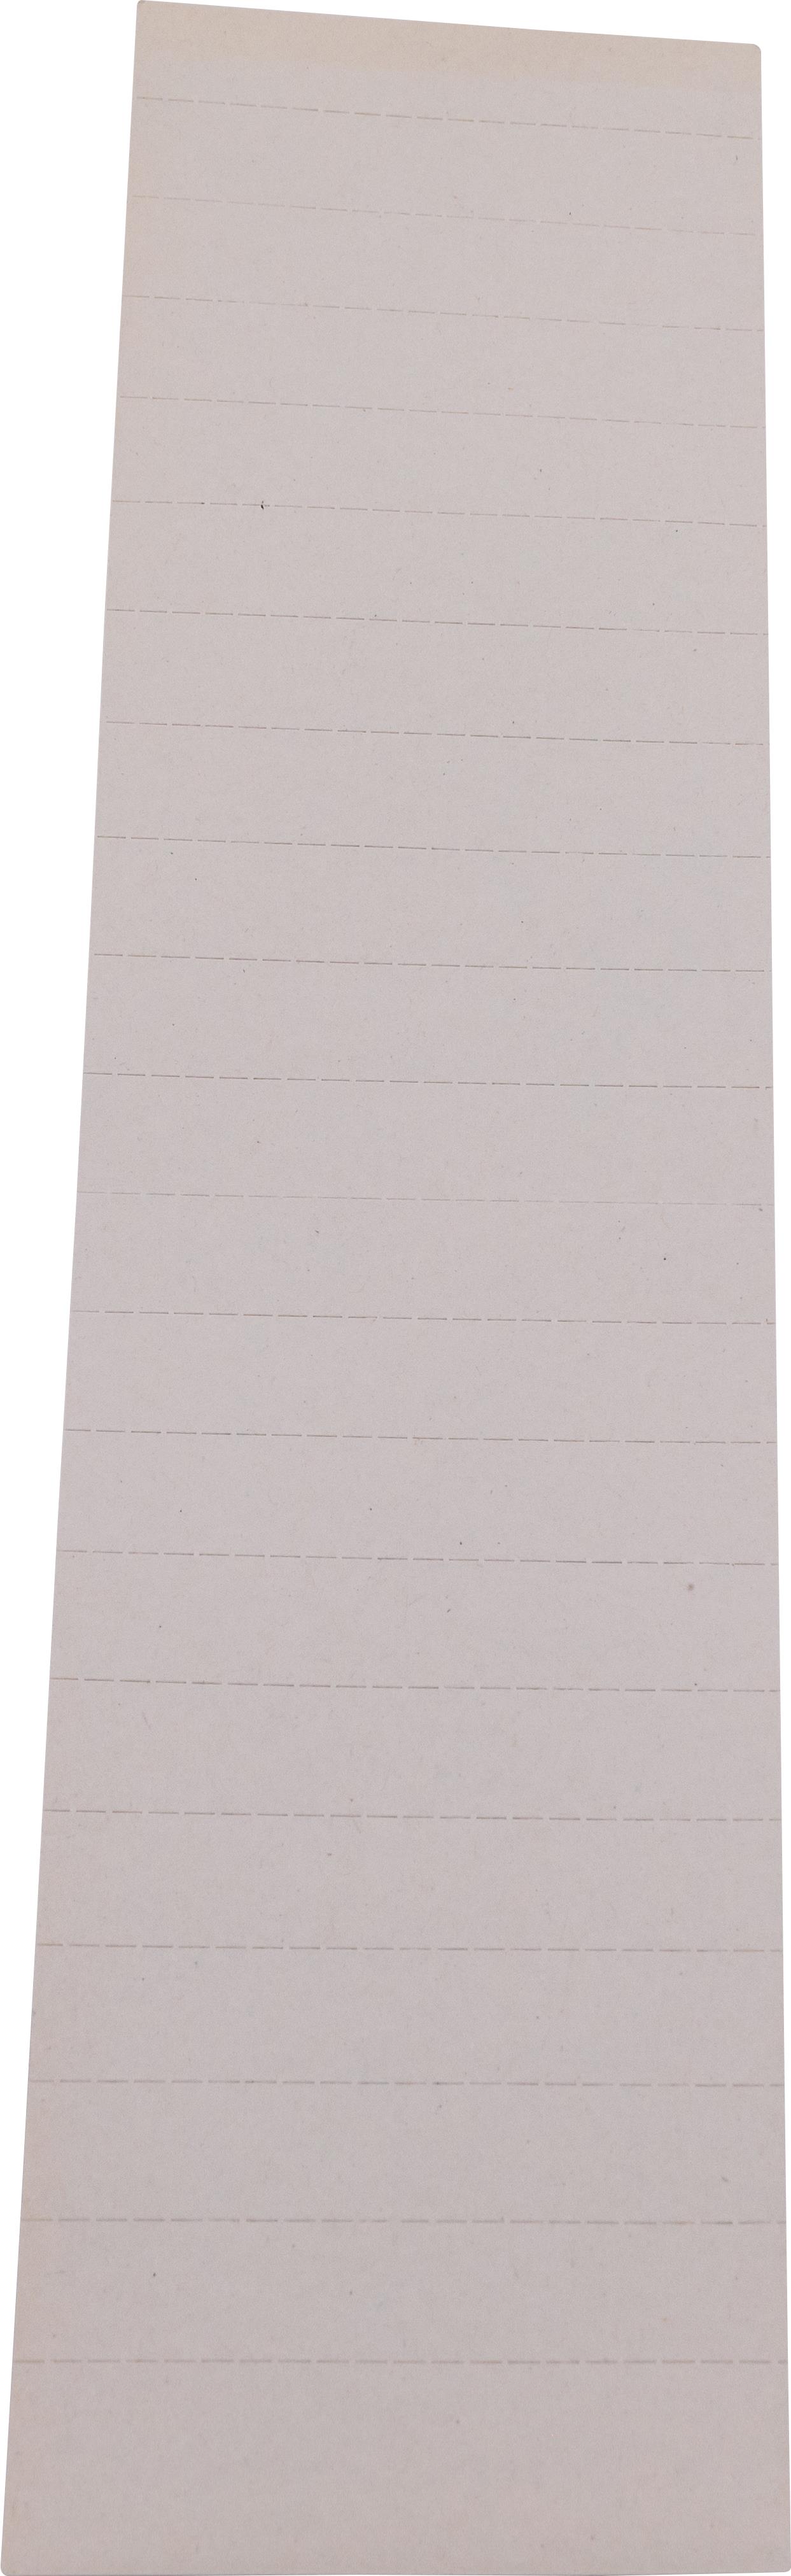 Einsteckschild, 70 mm, weiß, Karton, f. 912130 u. 942130